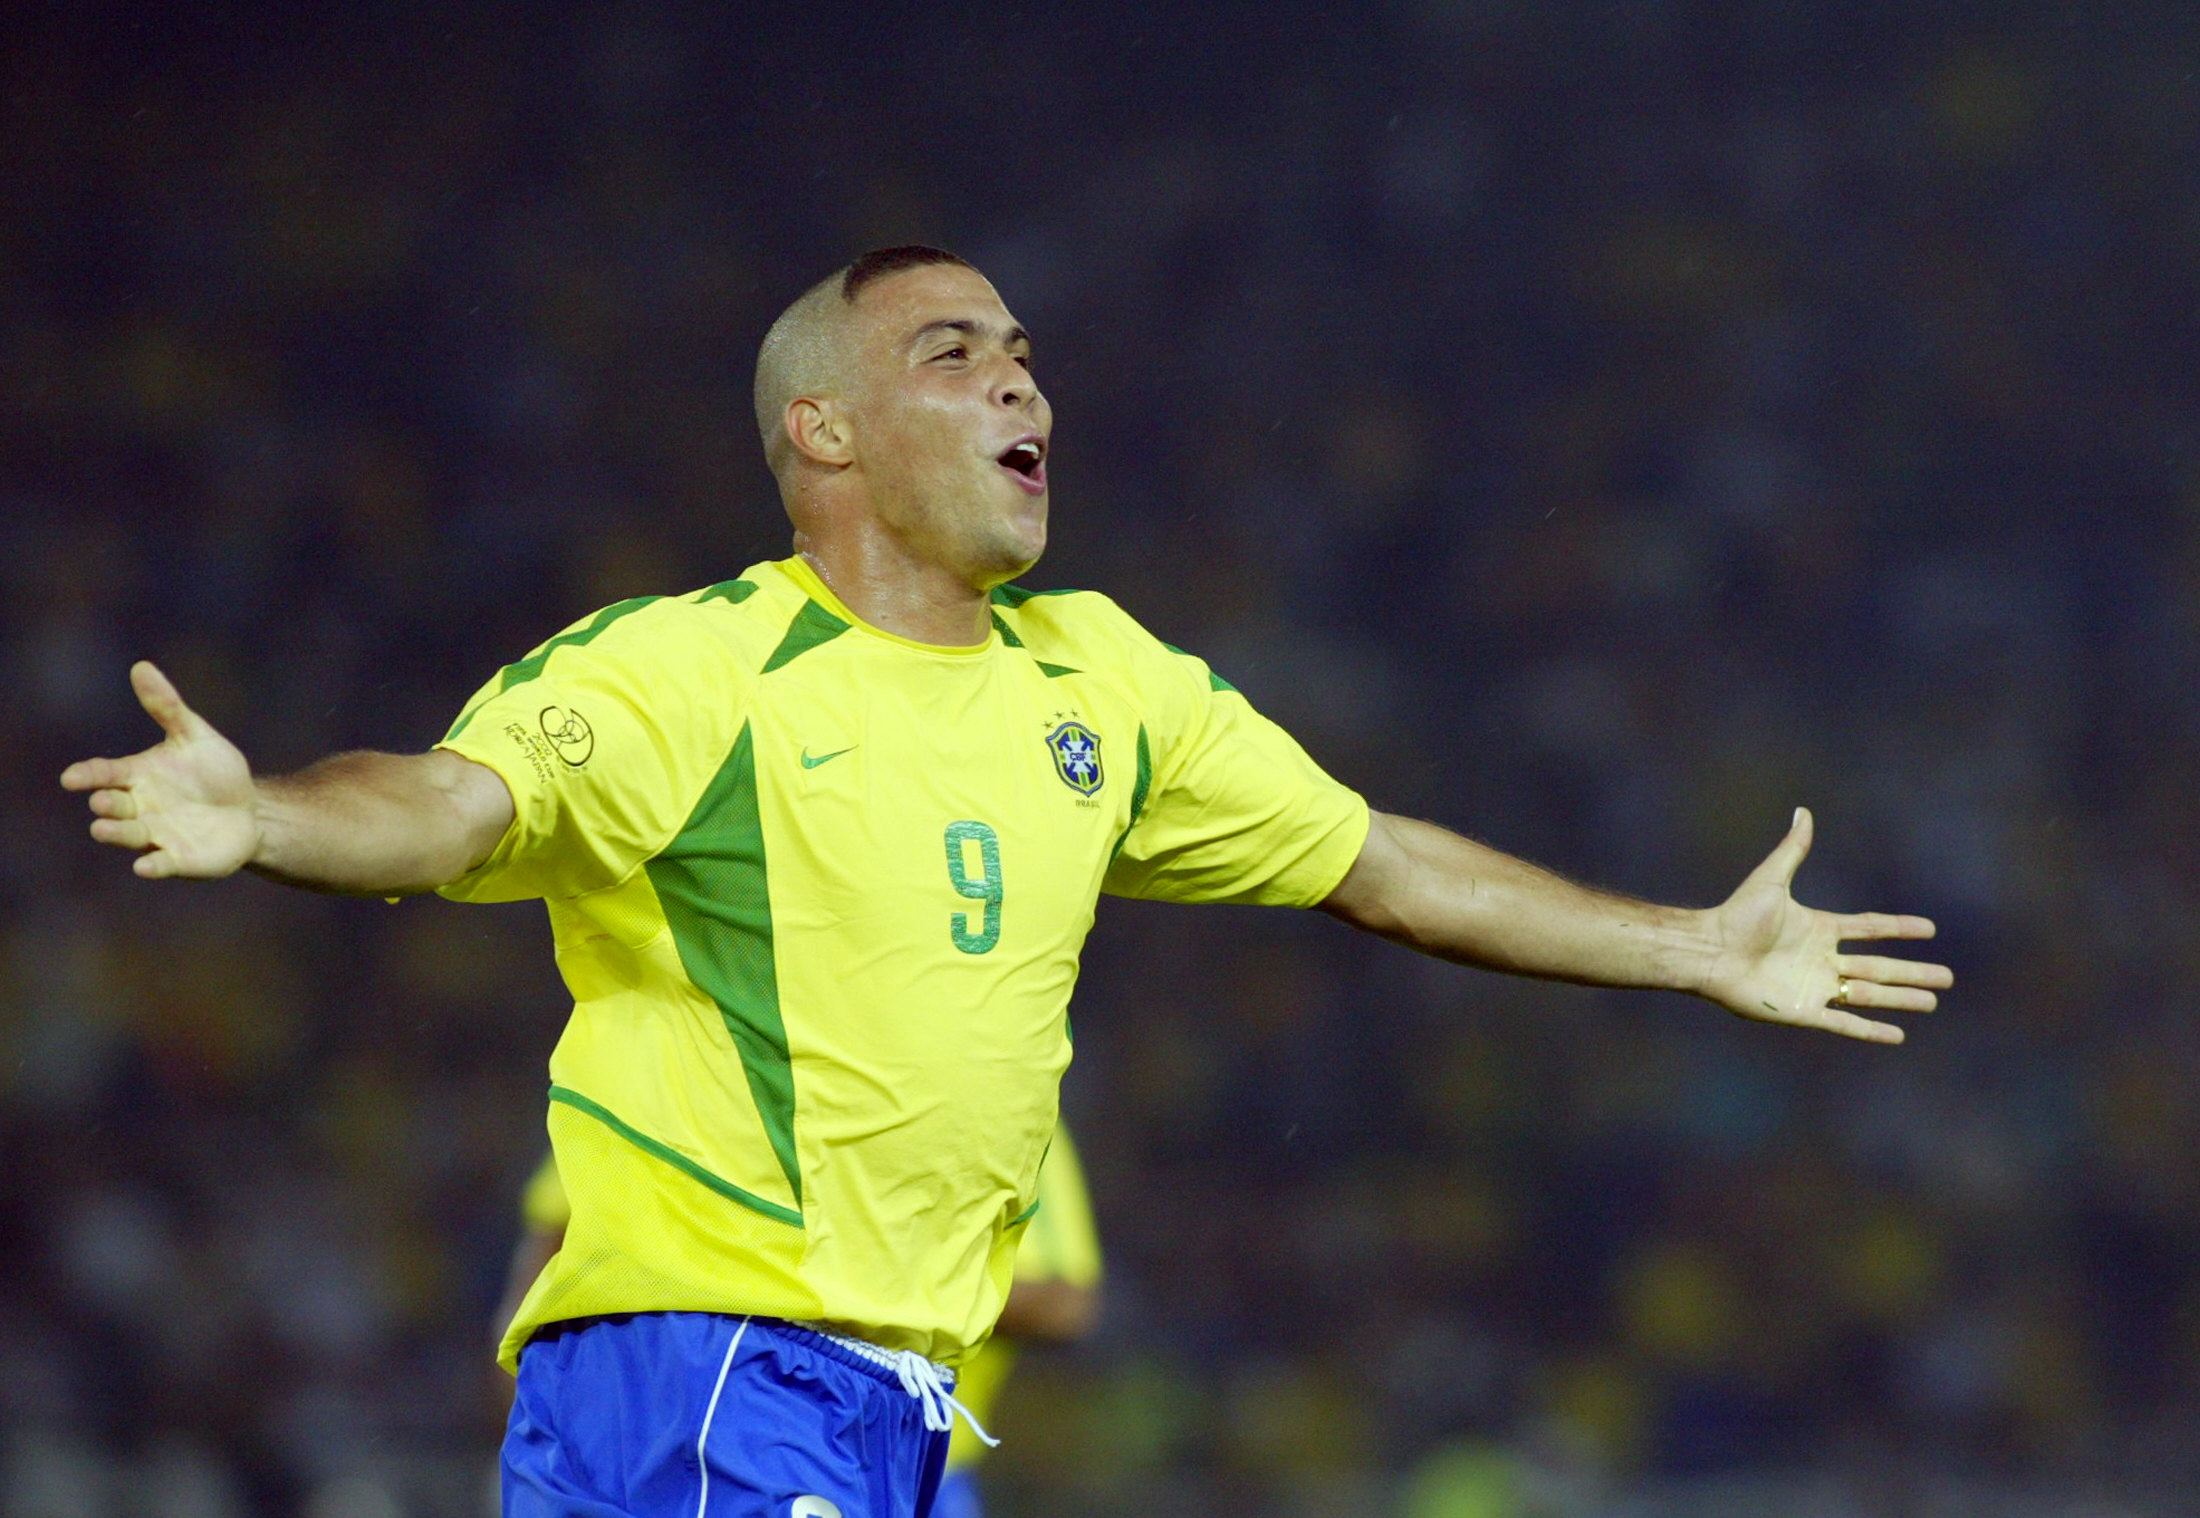 Ronaldo Nazario y su arriesgado peinado, no pasaron desapercibidos en el Mundial de 2002.